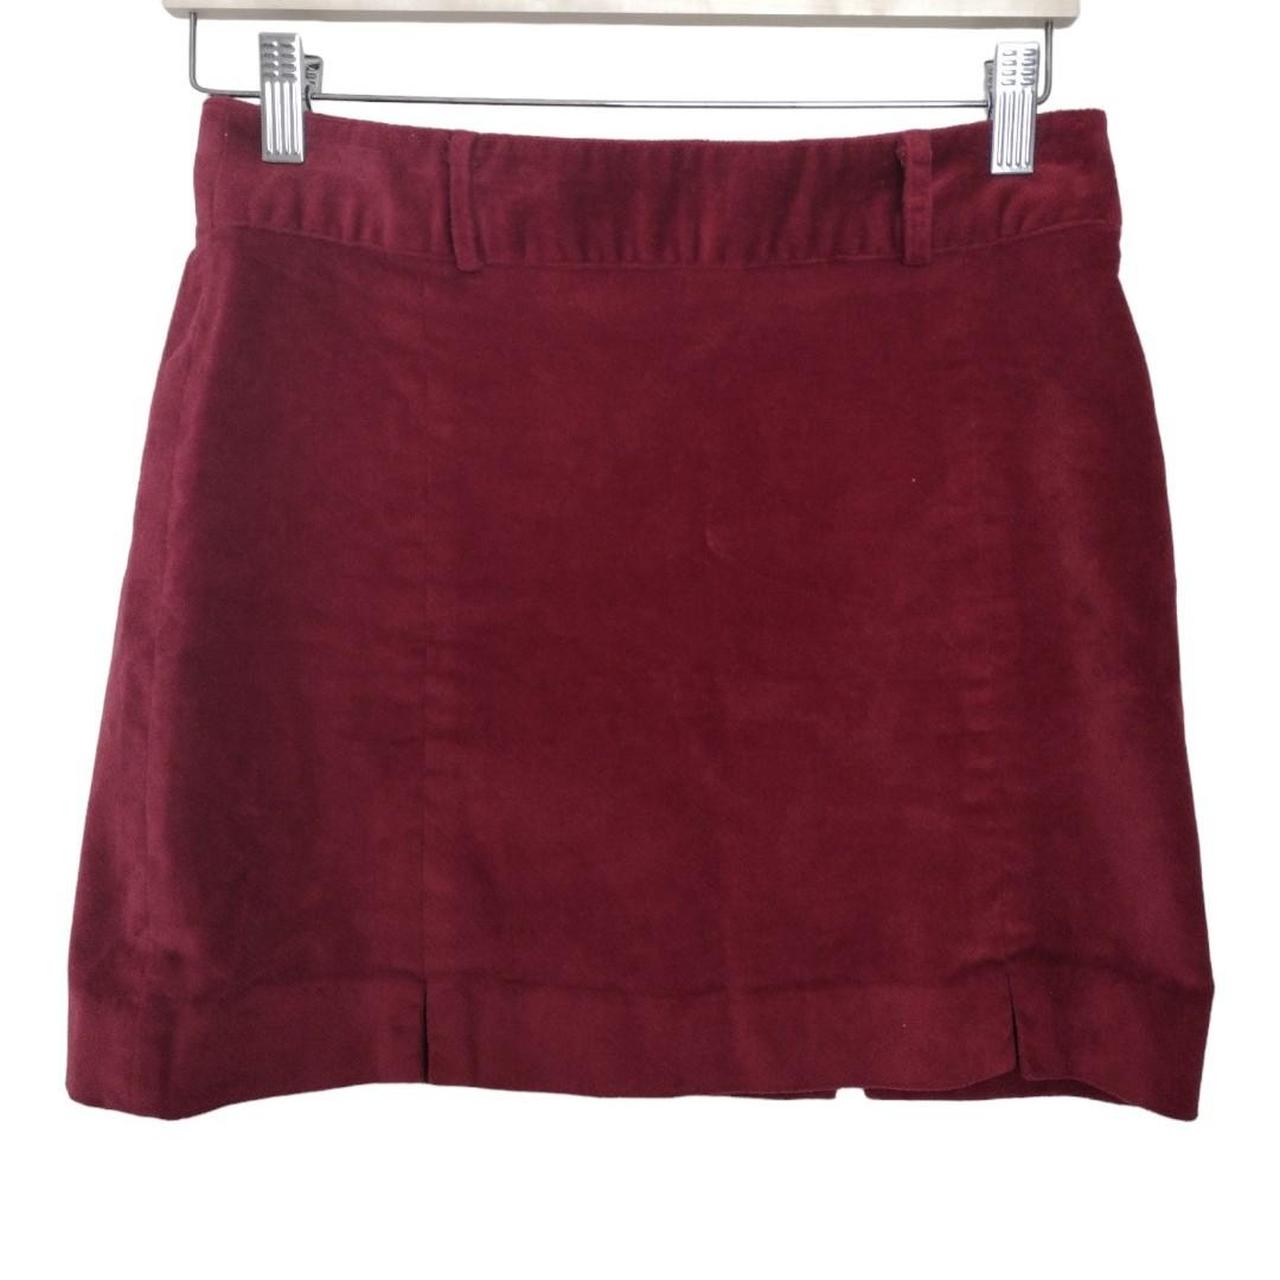 Size 8 dark red velvet mini skirt from Korean brand... - Depop